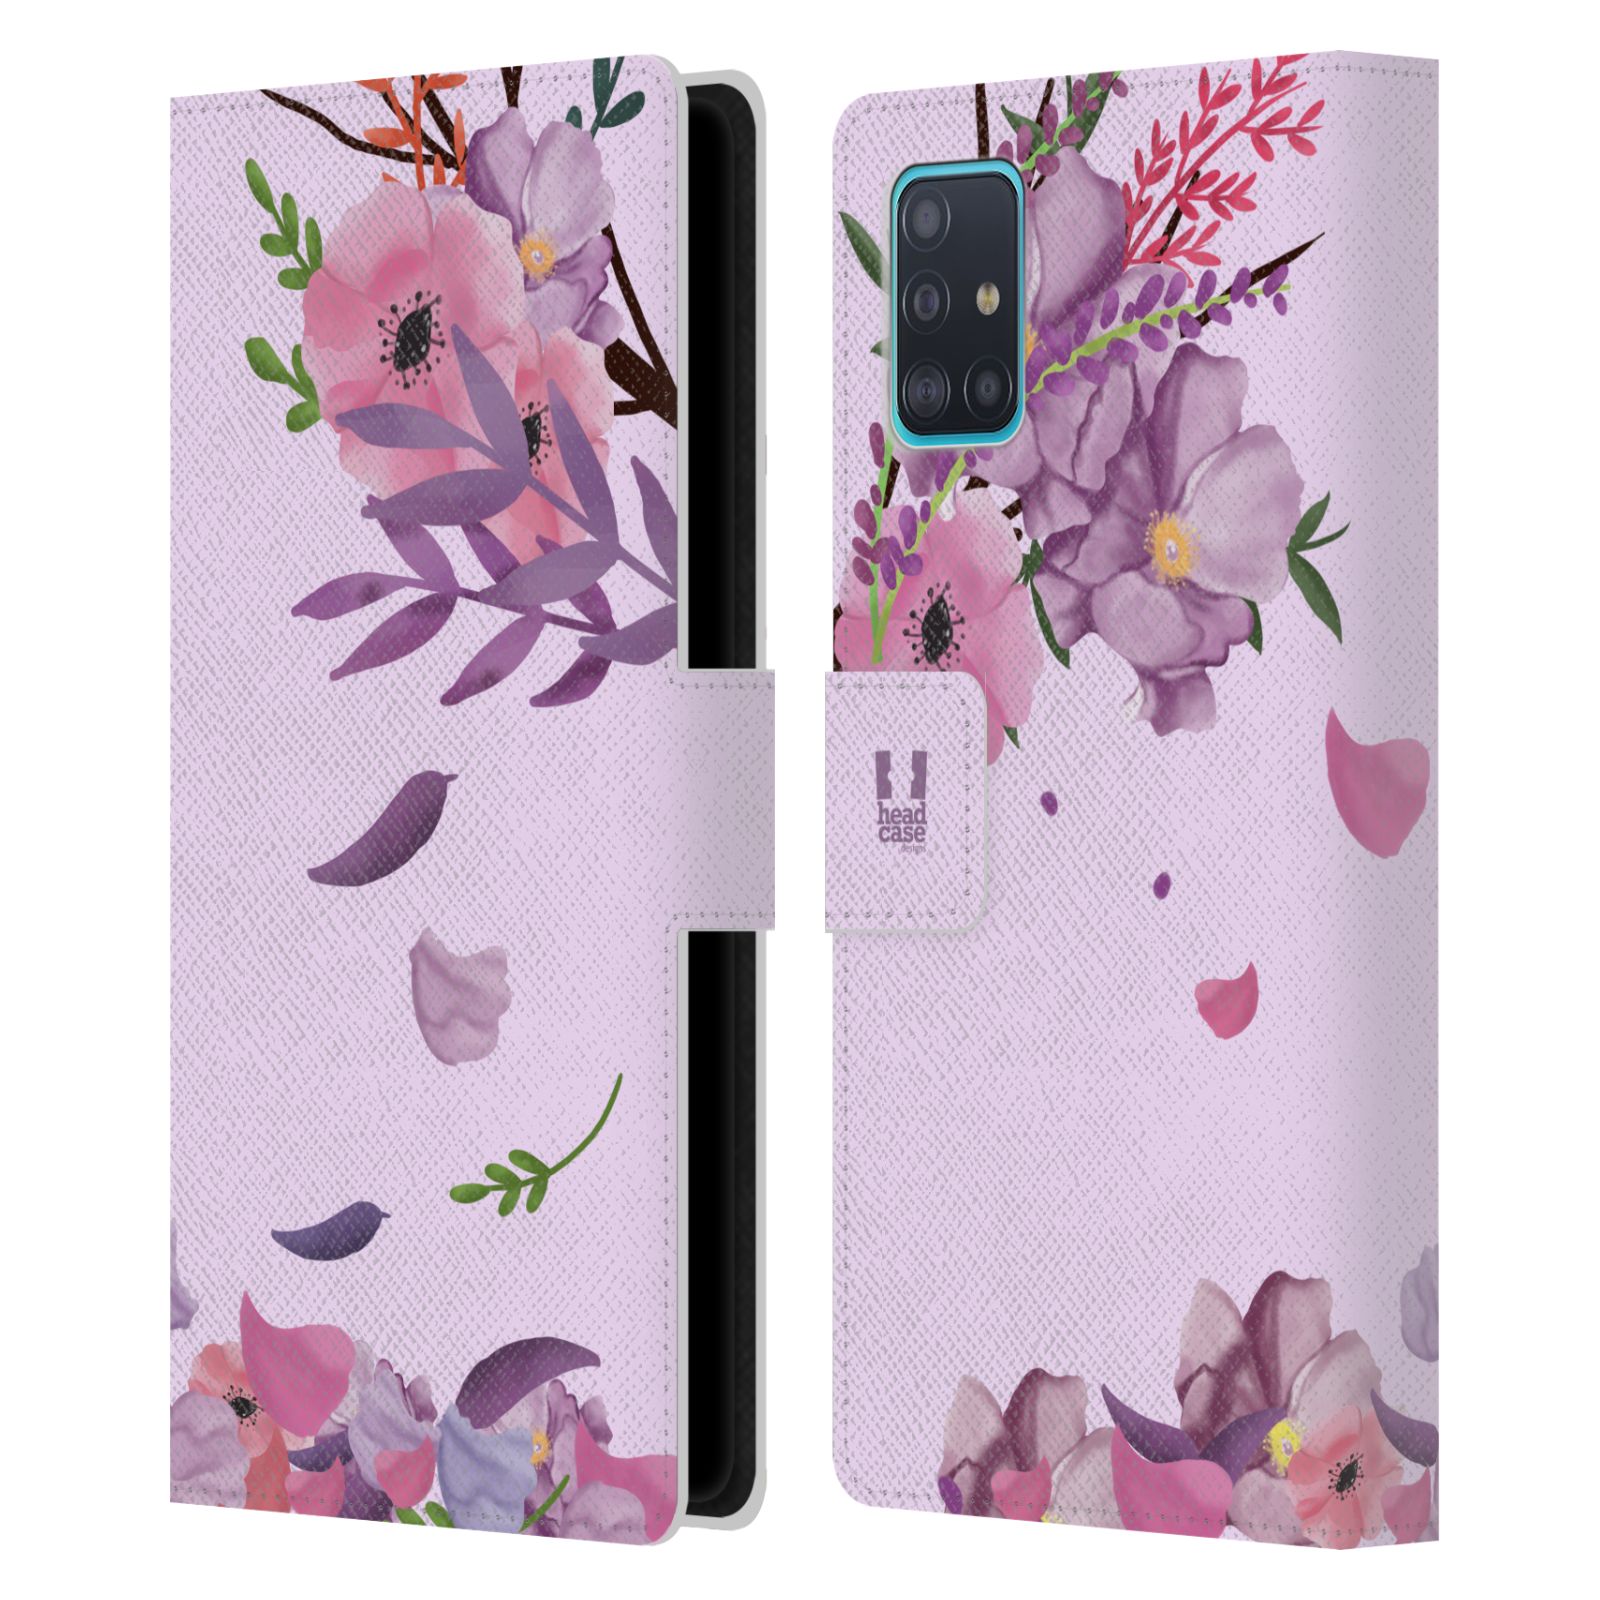 Pouzdro na mobil Samsung Galaxy A51 - HEAD CASE - Rozkvetlé růže a listy růžová